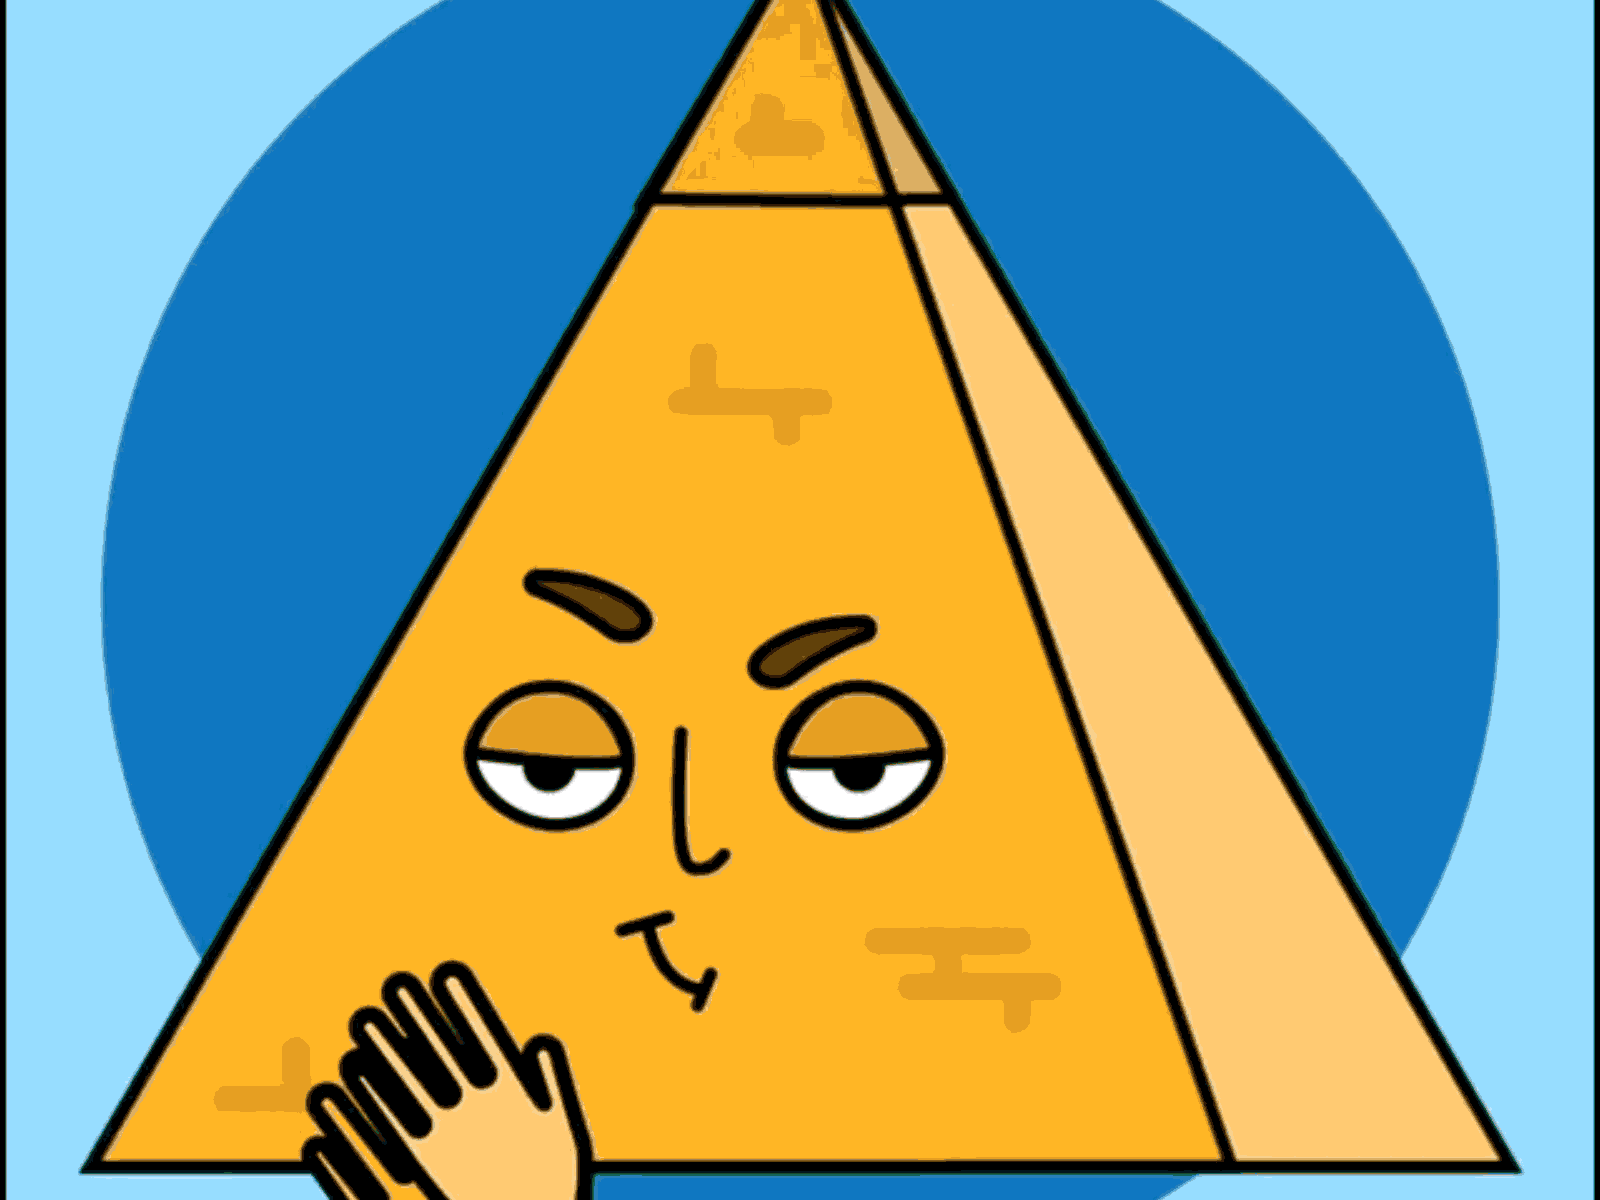 Pyramid Schemes